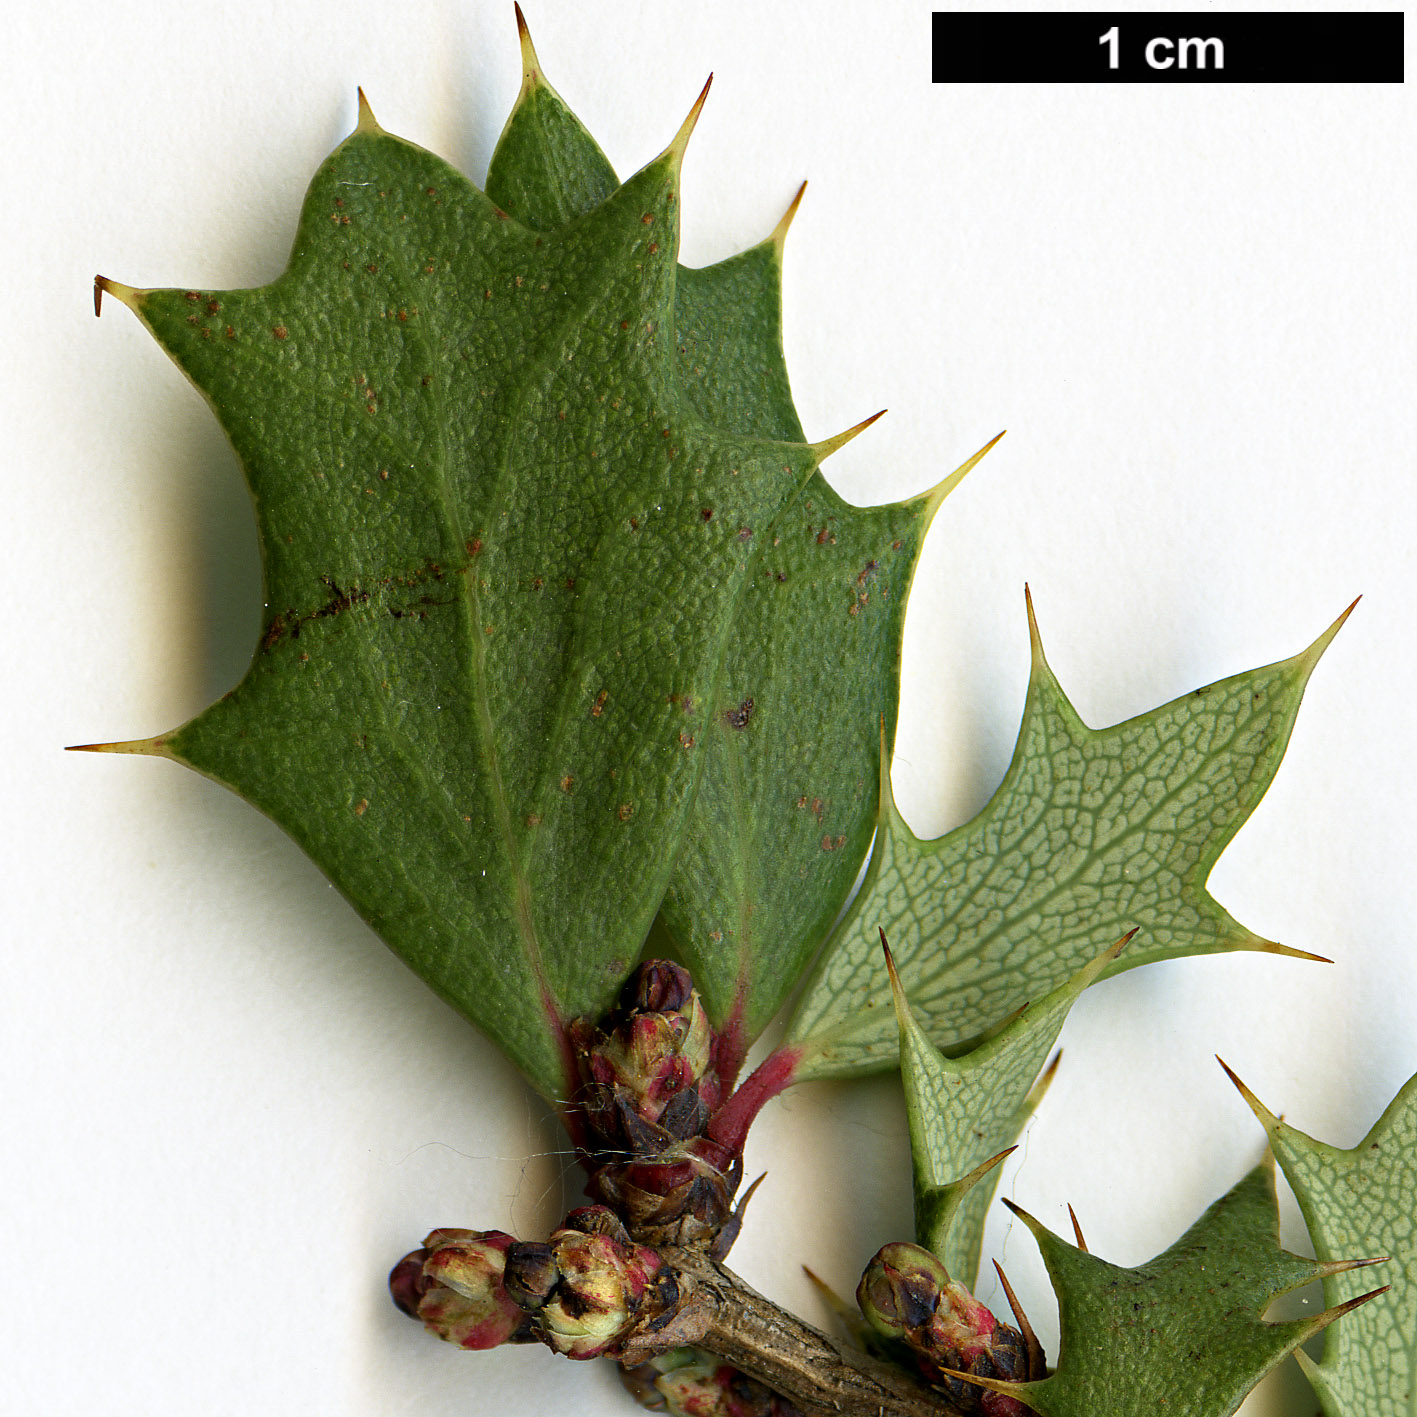 High resolution image: Family: Berberidaceae - Genus: Berberis - Taxon: chilensis